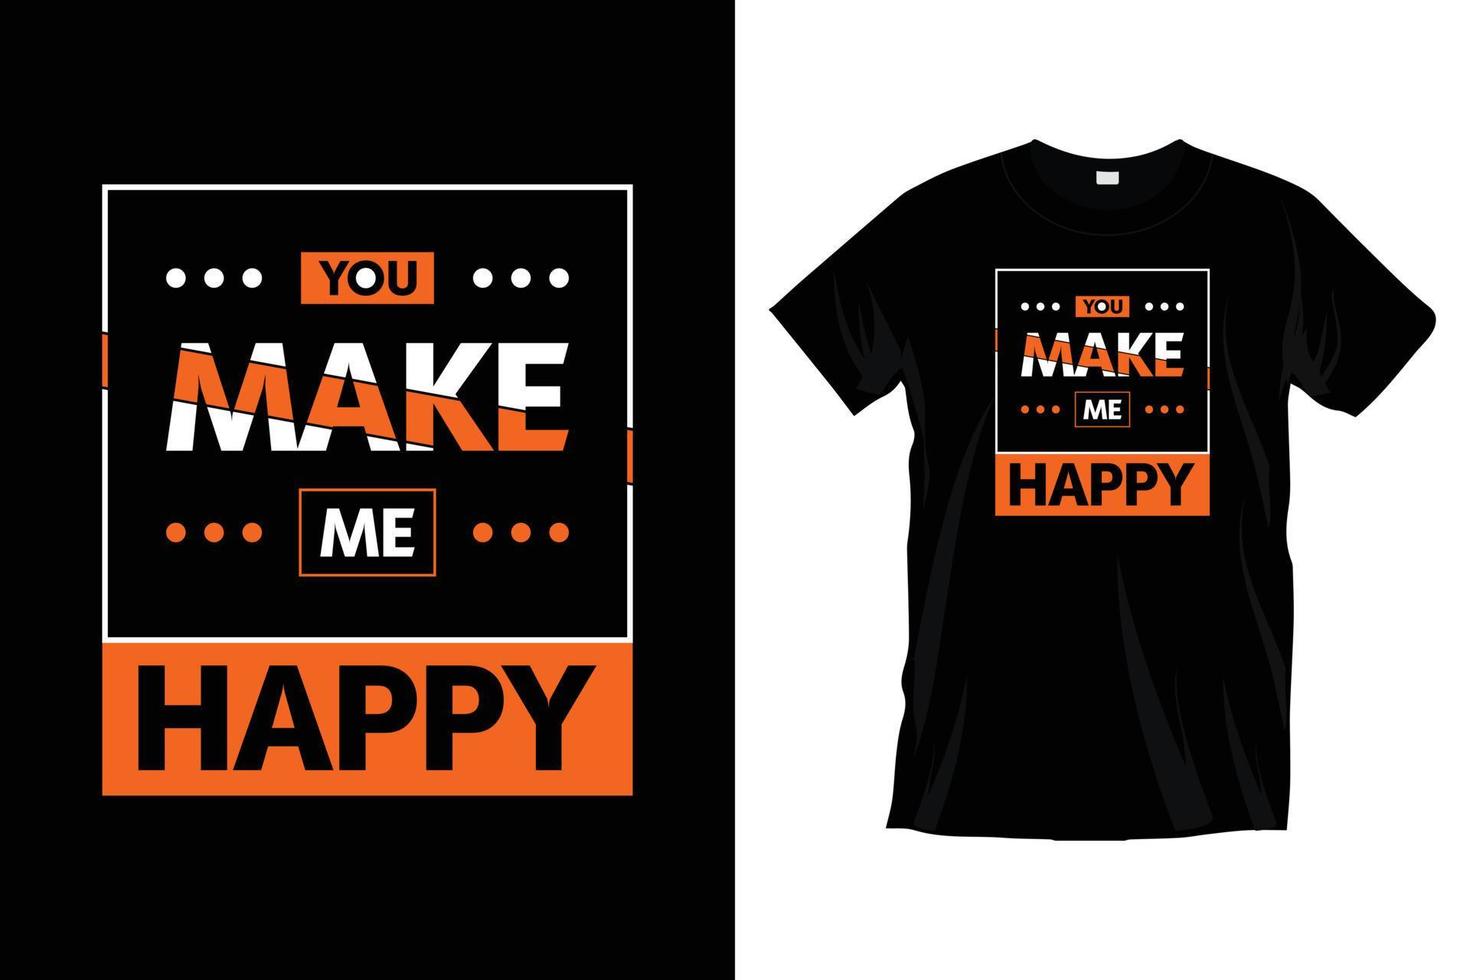 Du machst mich glücklich. modernes motivierendes inspirierendes Typografie-T-Shirt-Design für Drucke, Bekleidung, Vektor, Kunst, Illustration, Typografie, Poster, Vorlage, trendiges schwarzes T-Shirt-Design. vektor